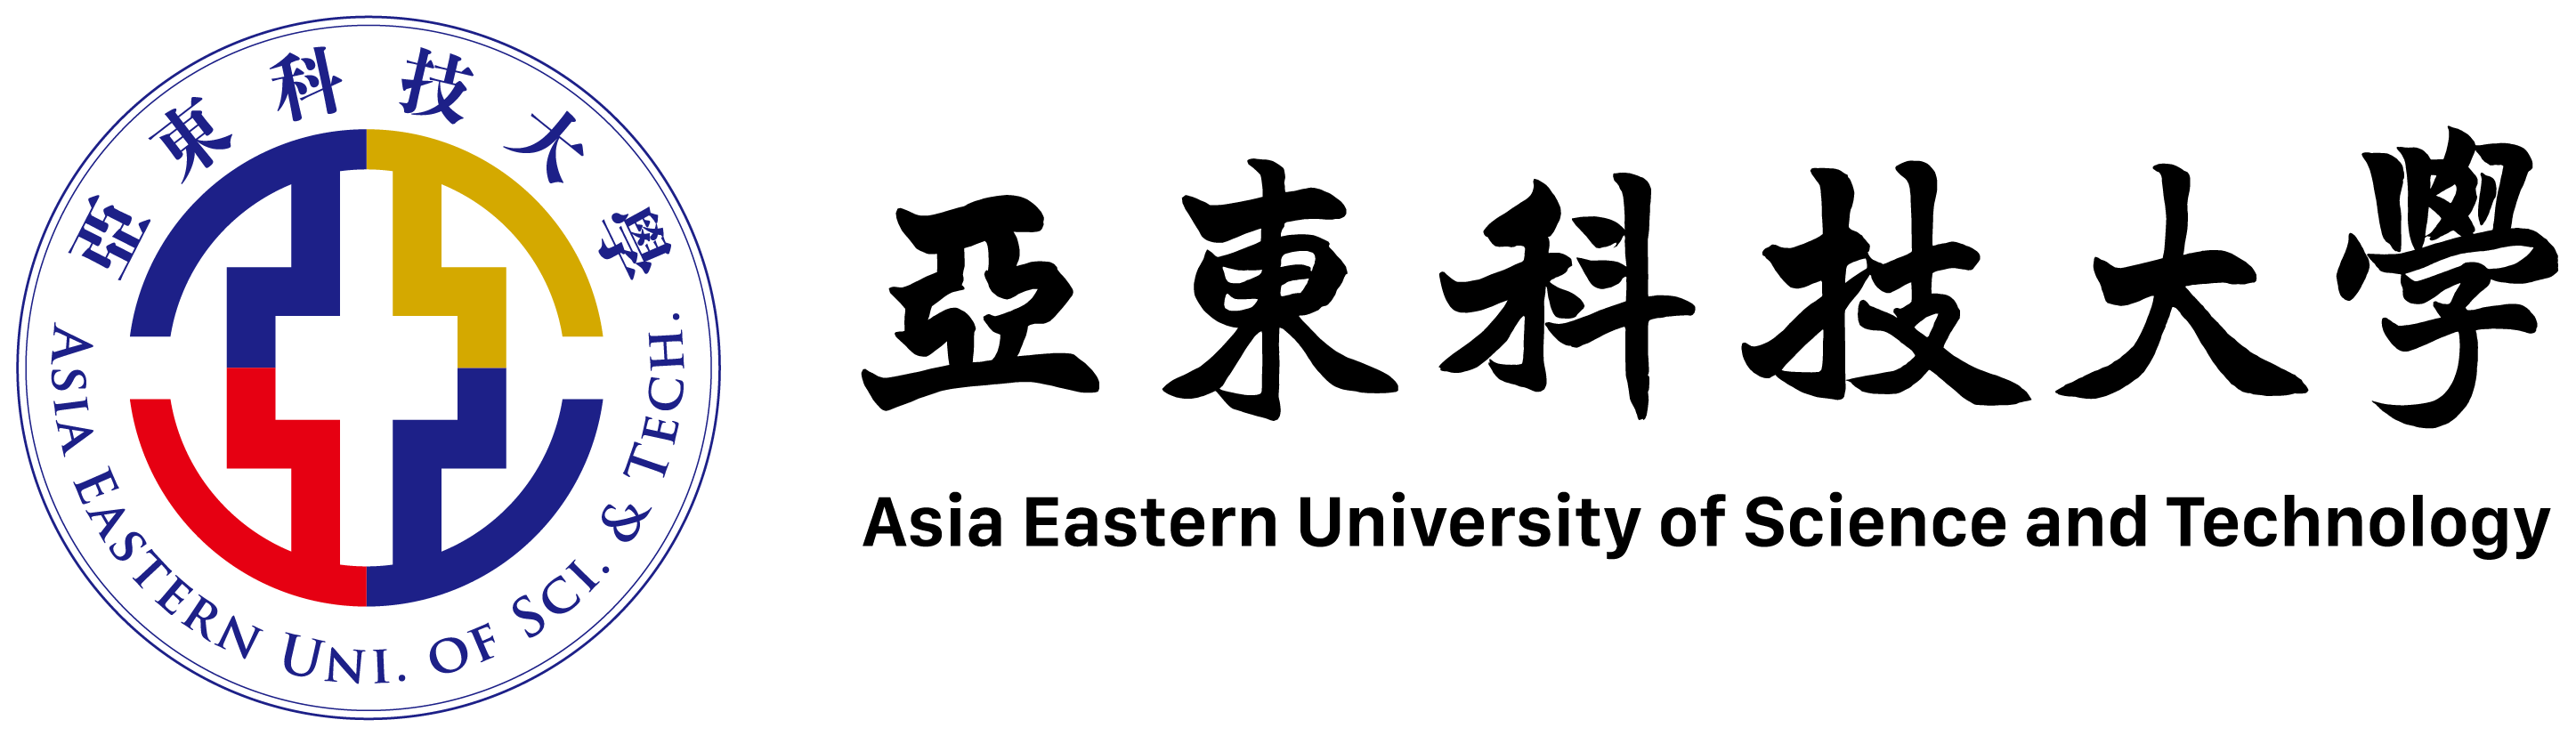 亞東學校財團法人亞東科技大學logo